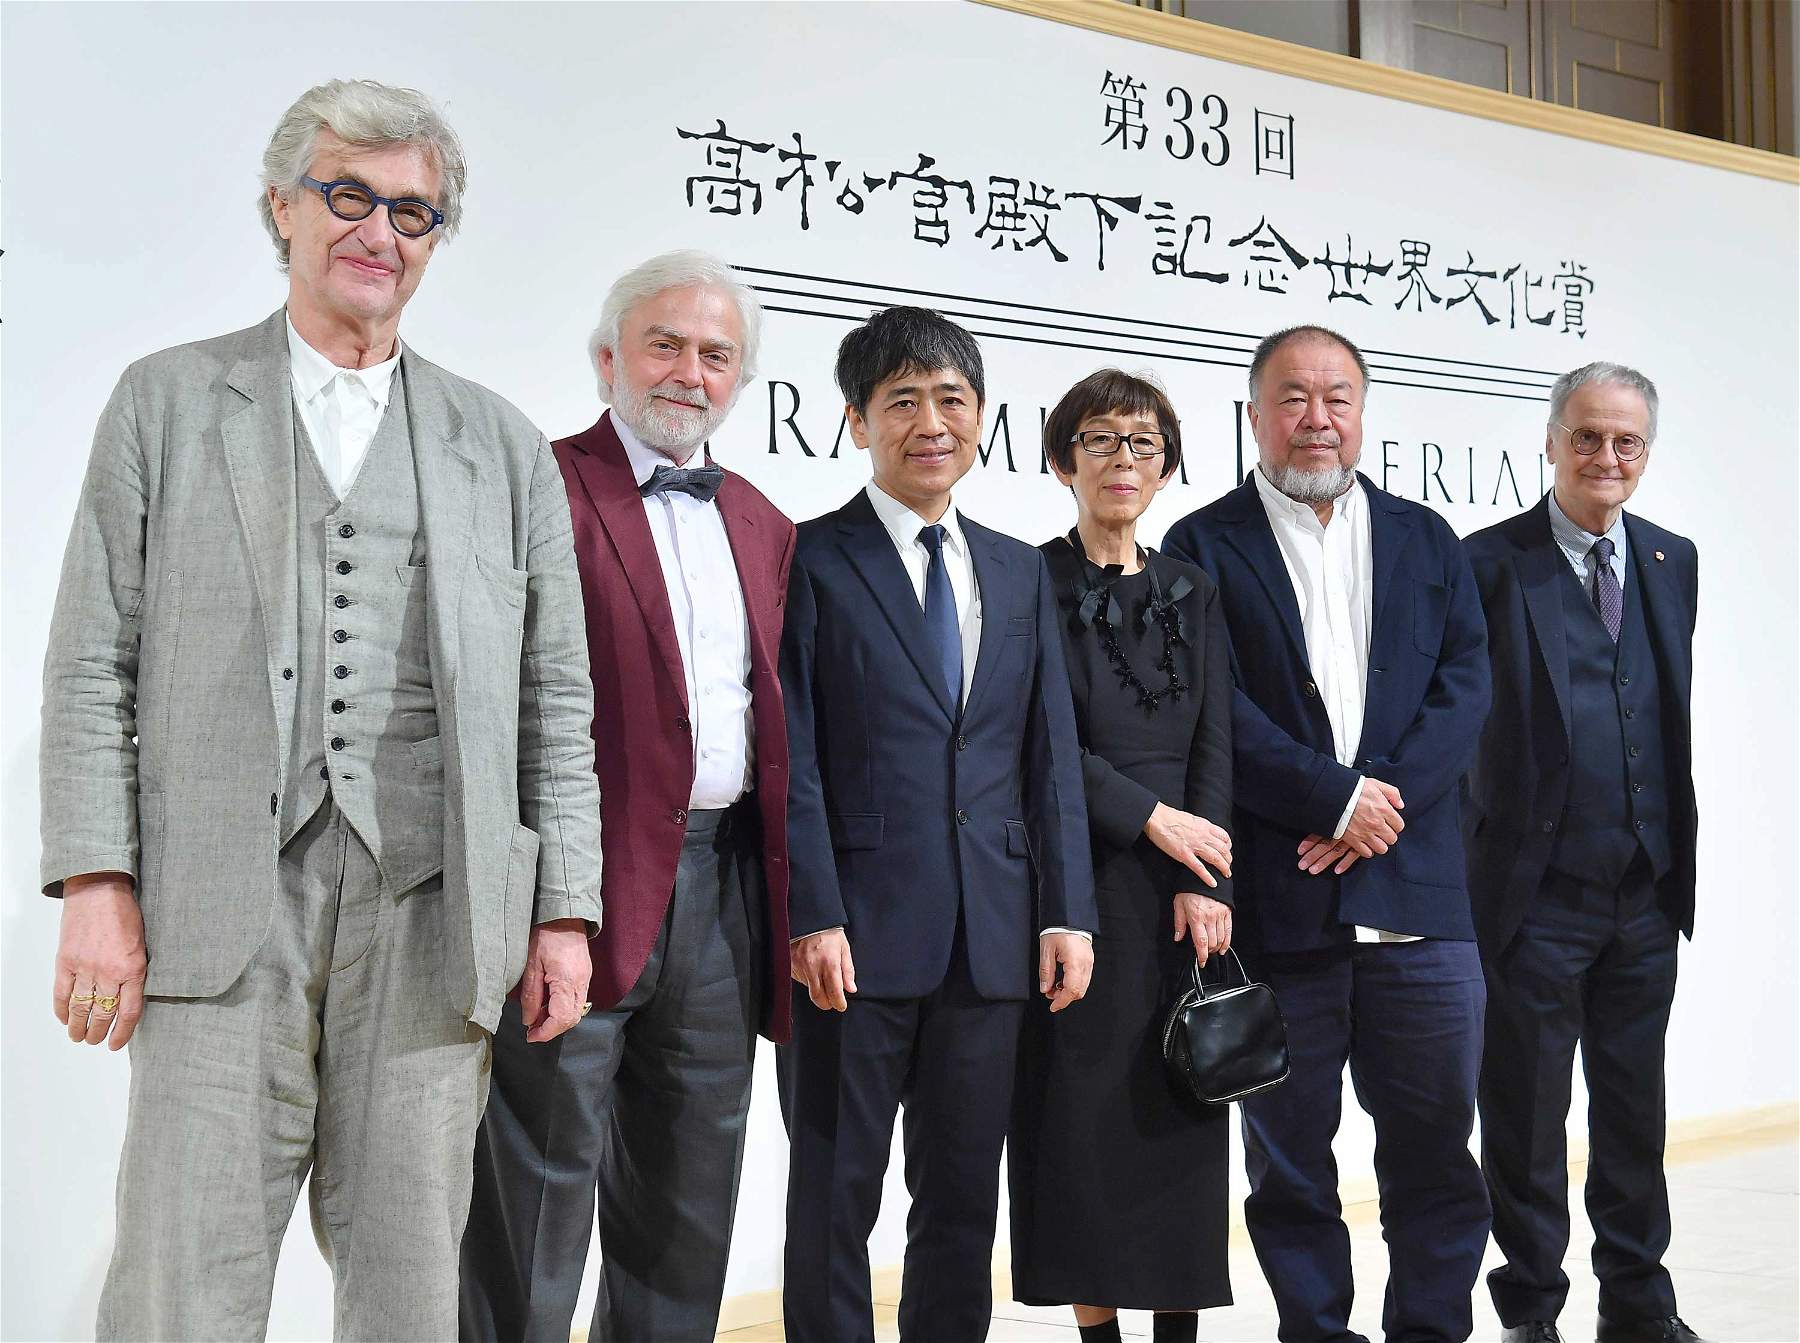 Le Praemium Imperiale 2022 lui a été décerné. Parmi les lauréats figurent Ai Weiwei, Giulio Paolini et Wim Wenders.